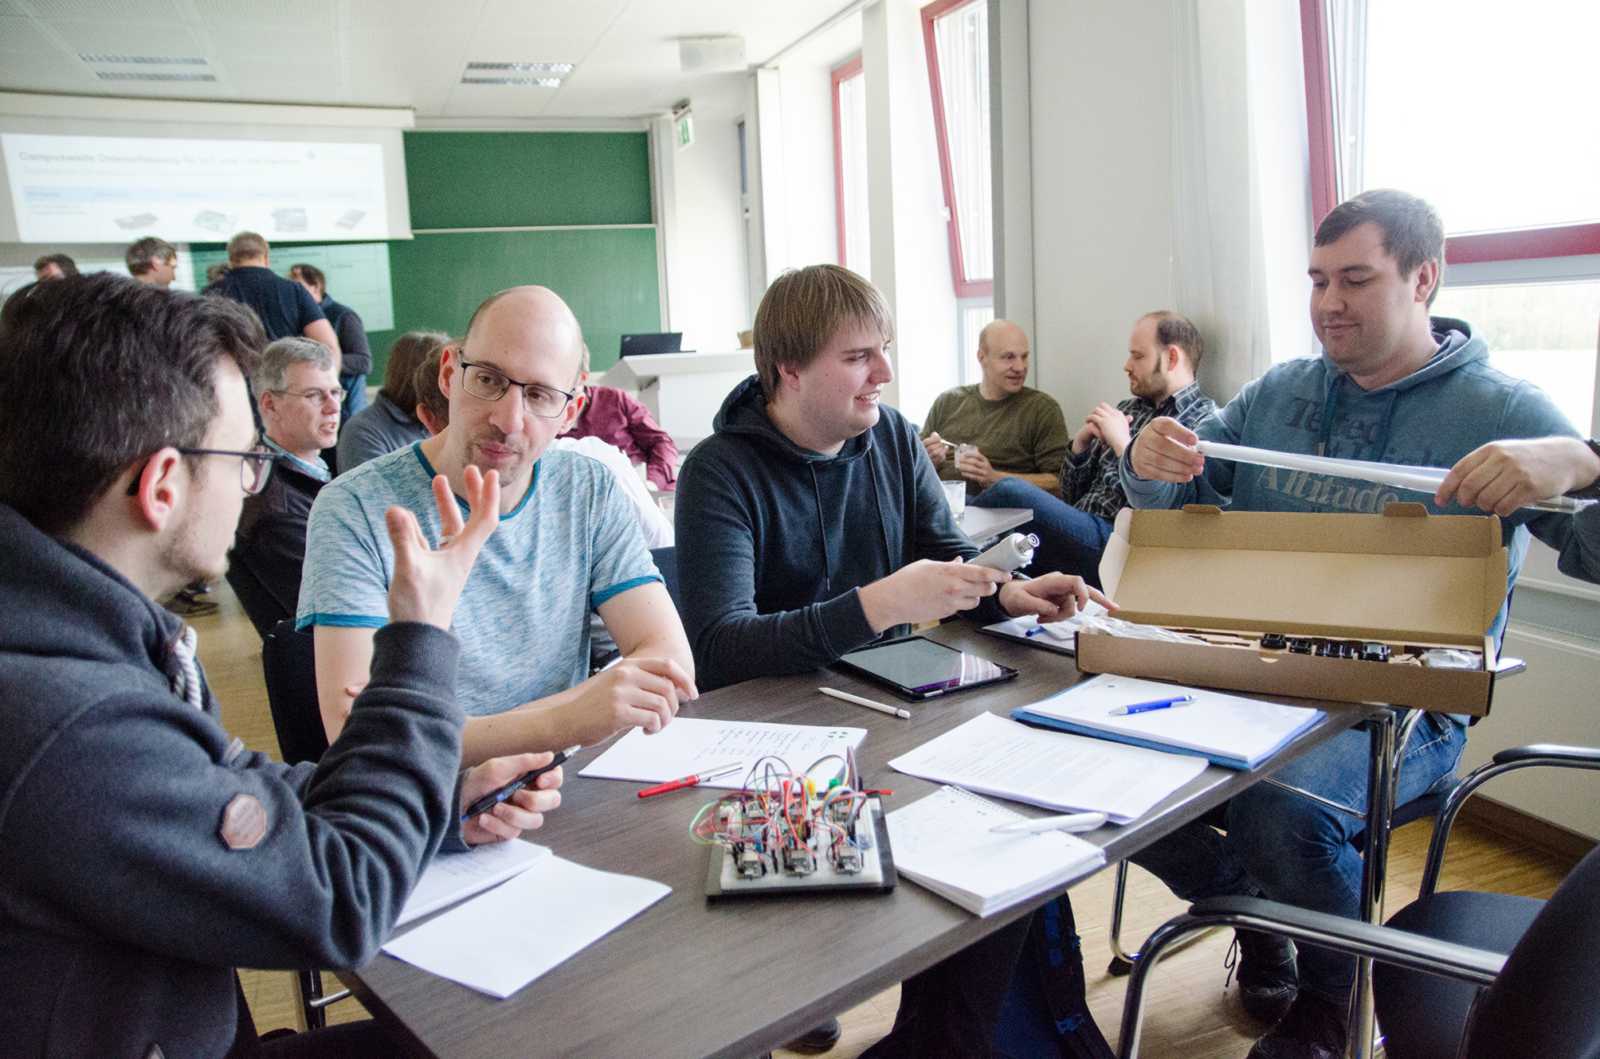 Professoren, wissenschaftliche Mitarbeiter und Doktoranden trafen sich zur ersten Brainstorming-Runde, um das Internet der Dinge auf dem Steinfurter Campus der FH Münster voranzutreiben. (Foto: FH Münster/Pressestelle)